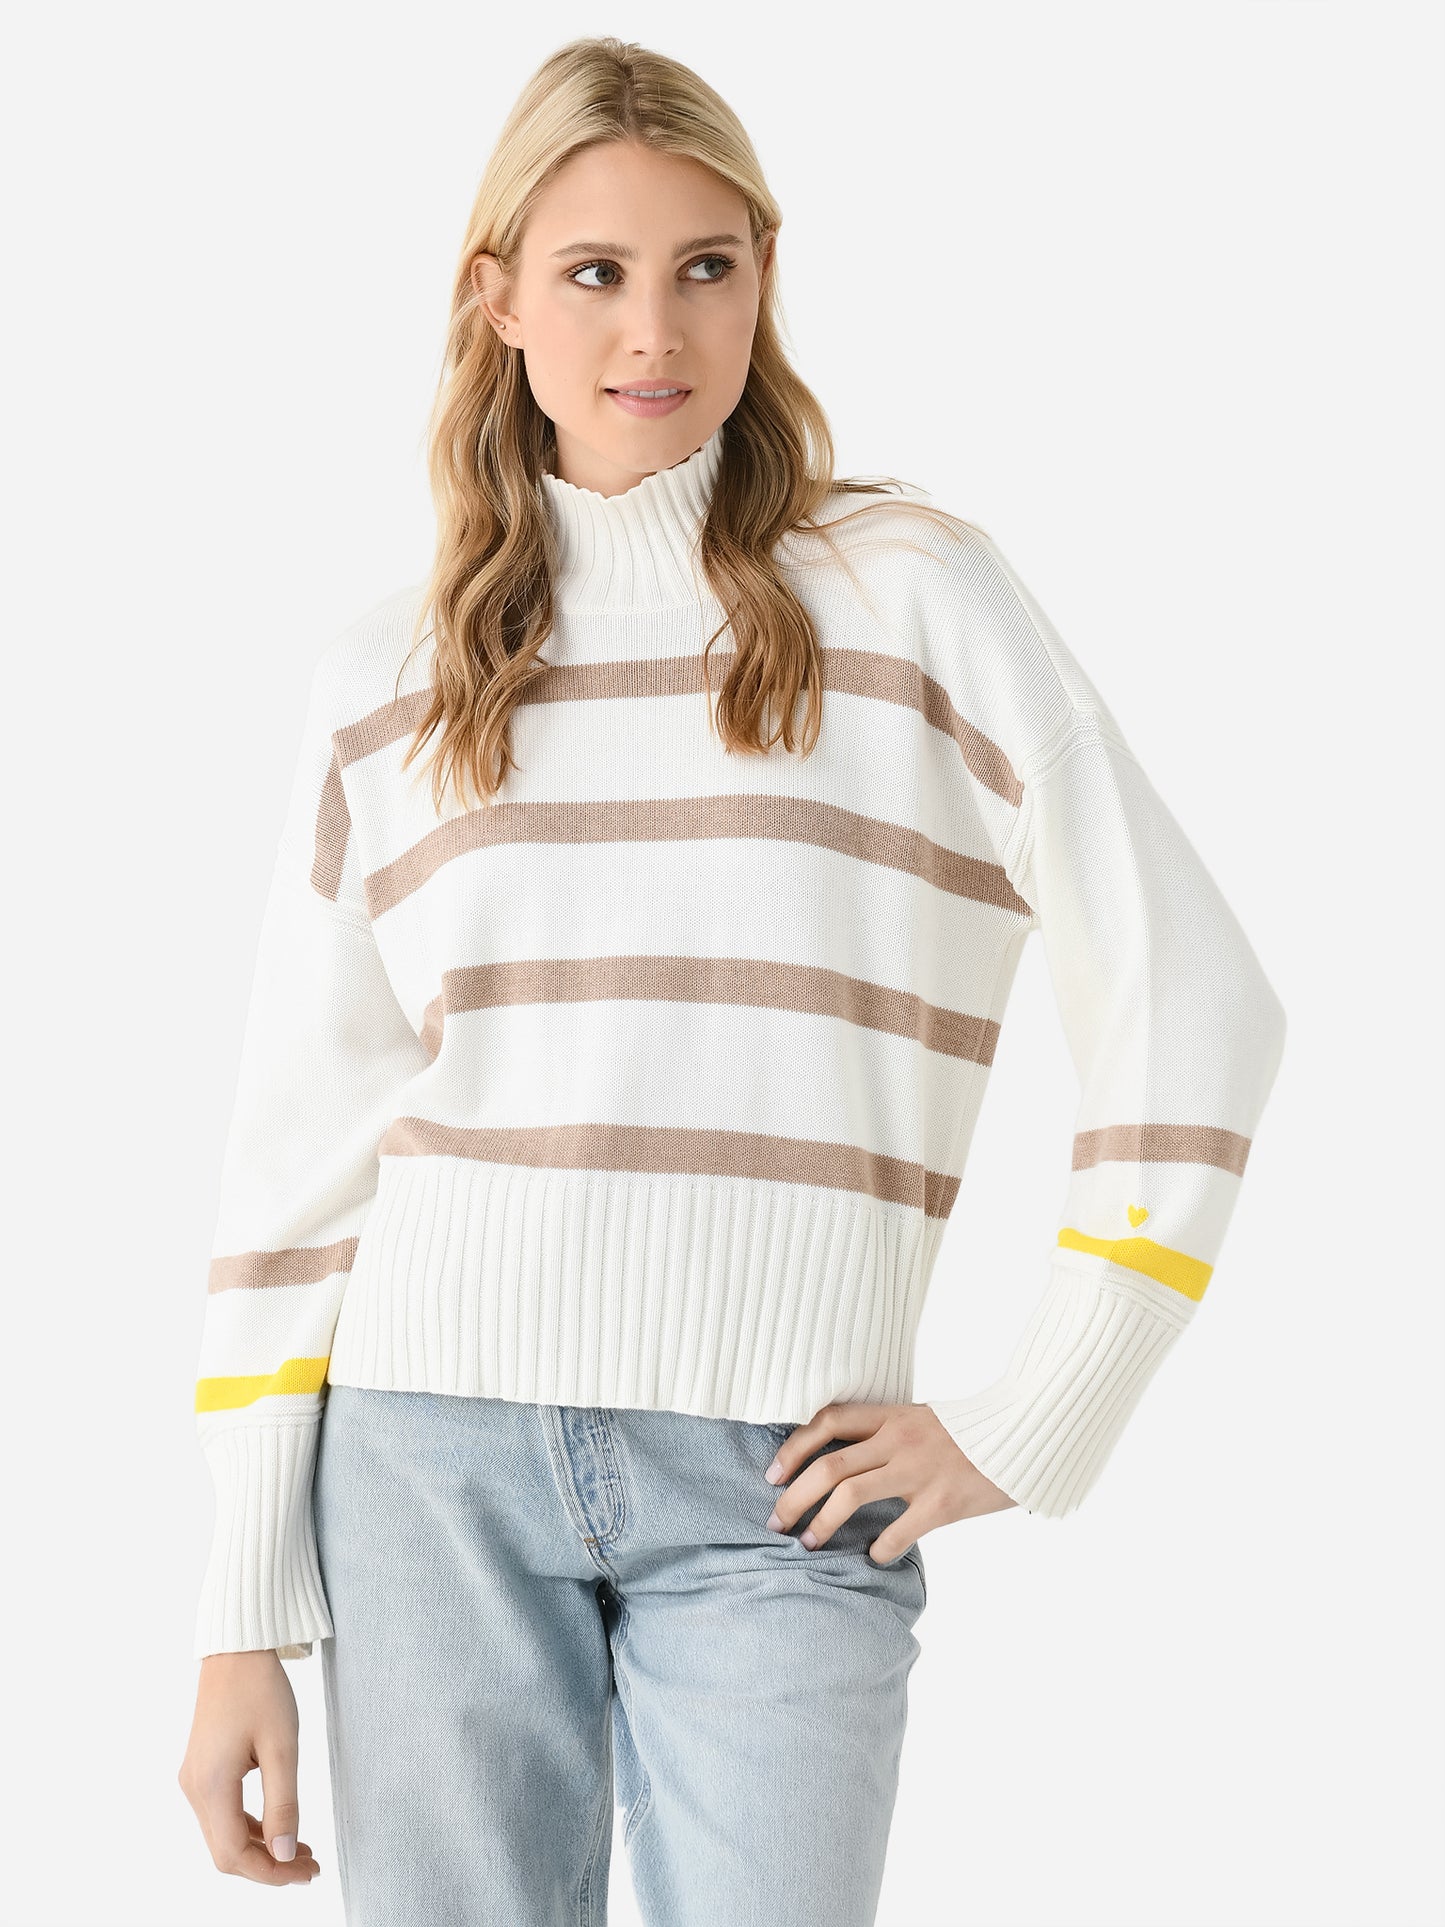 Kerri Rosenthal Women's Marlow Wide Stripe Sweater